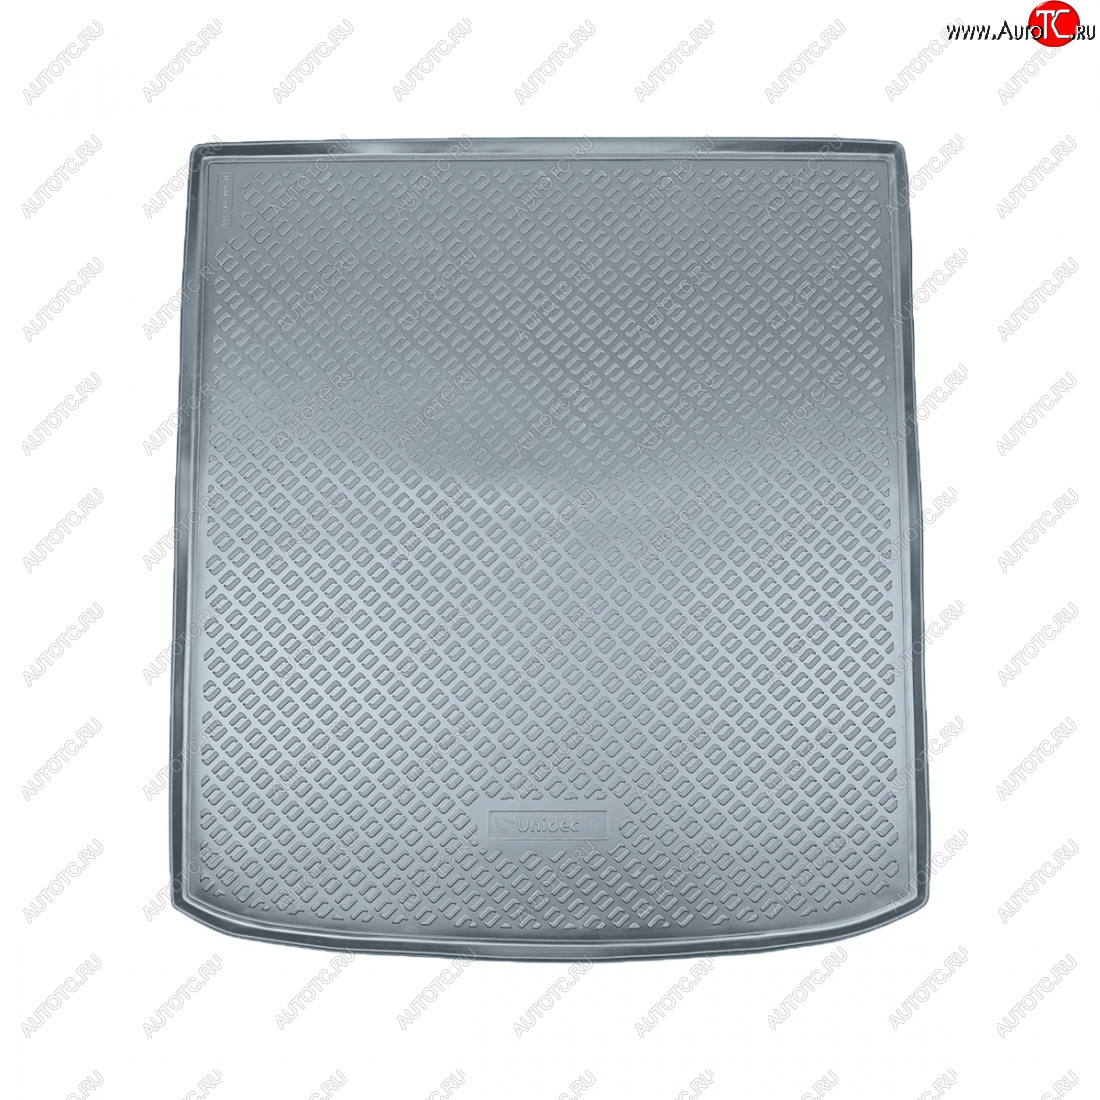 2 759 р. Коврик багажника Norplast Unidec (7 мест, сложенный 3 ряд)  Volkswagen Sharan  MK2,7N (2010-2015) (серый)